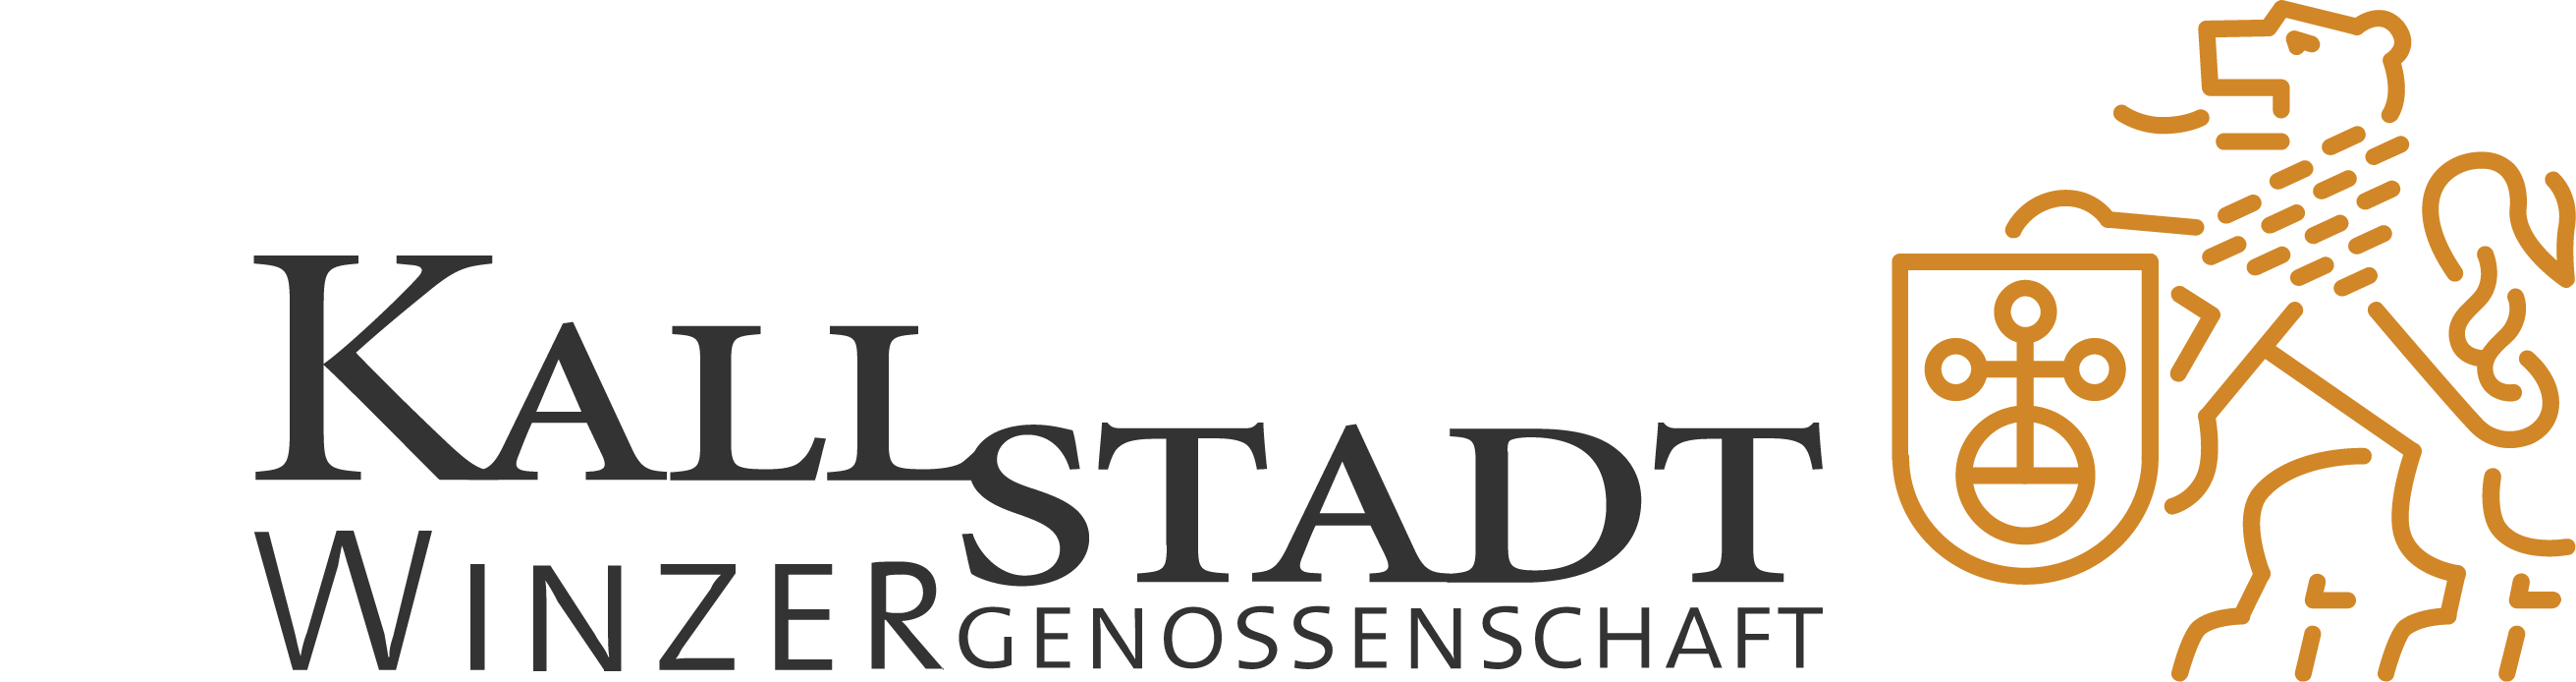 Homepage der Winzergenossenschaft Kallstadt eG logo